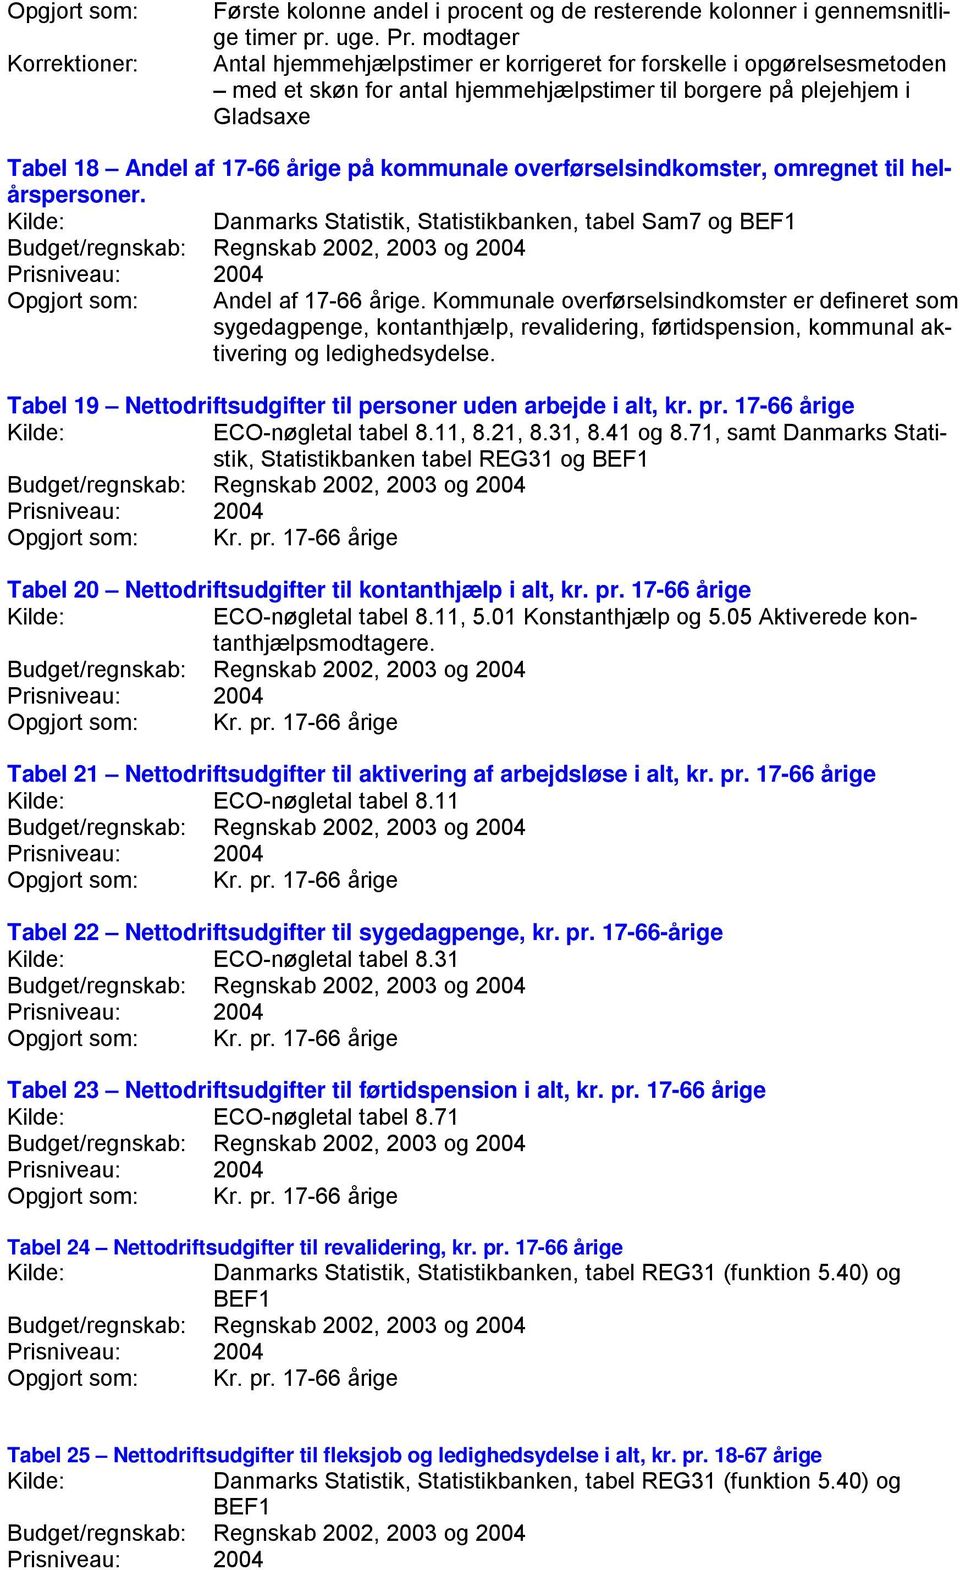 overførselsindkomster, omregnet til helårspersoner. Danmarks Statistik, Statistikbanken, tabel Sam7 og BEF1 Andel af 17-66 årige.